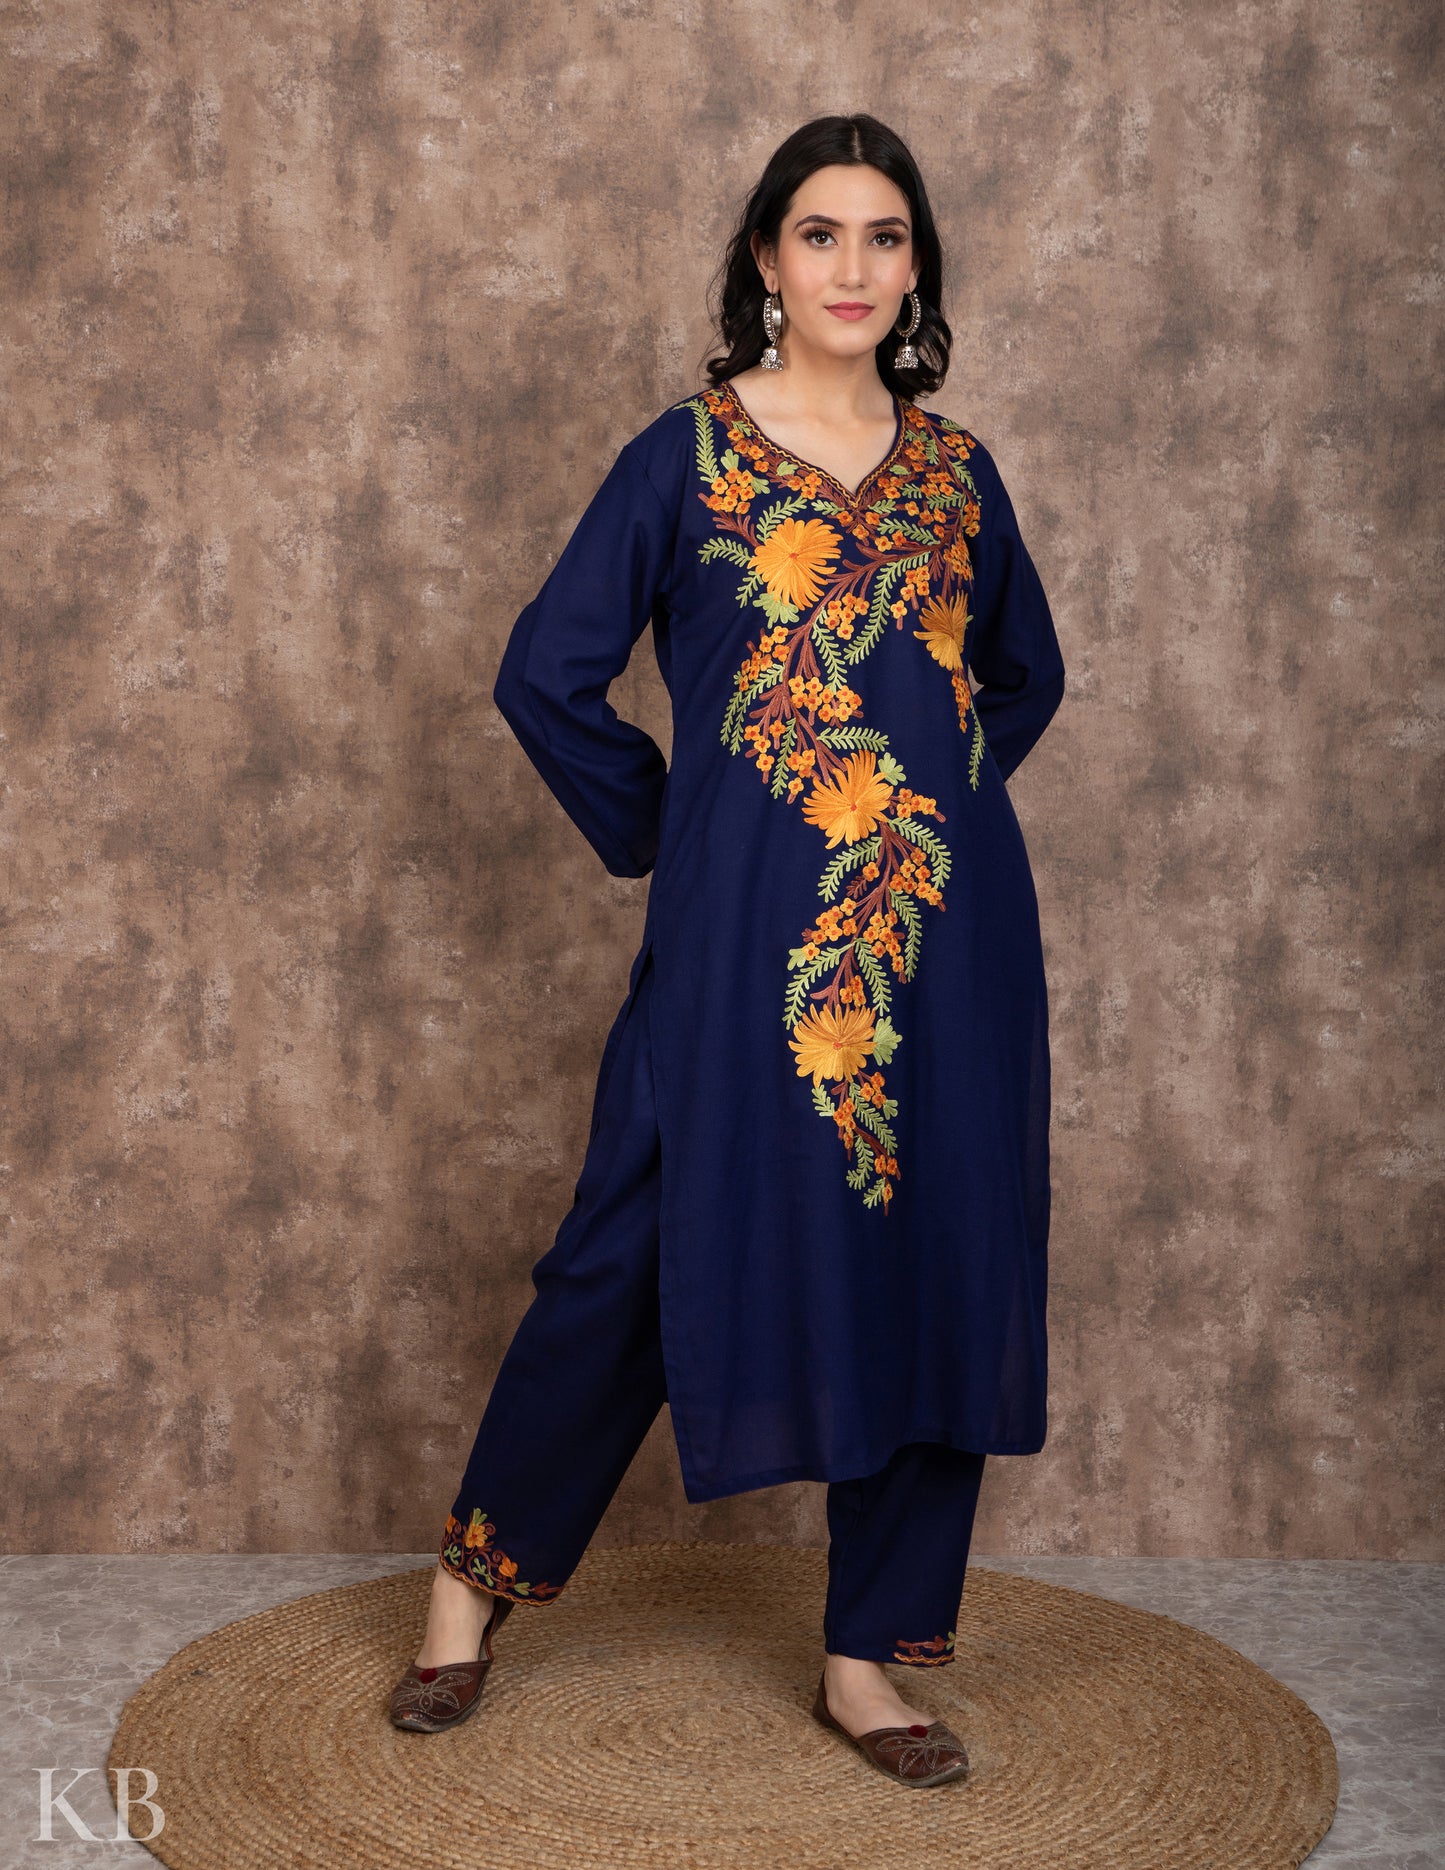 Floral Aari Dark Blue Cotton Suit - Kashmir Box